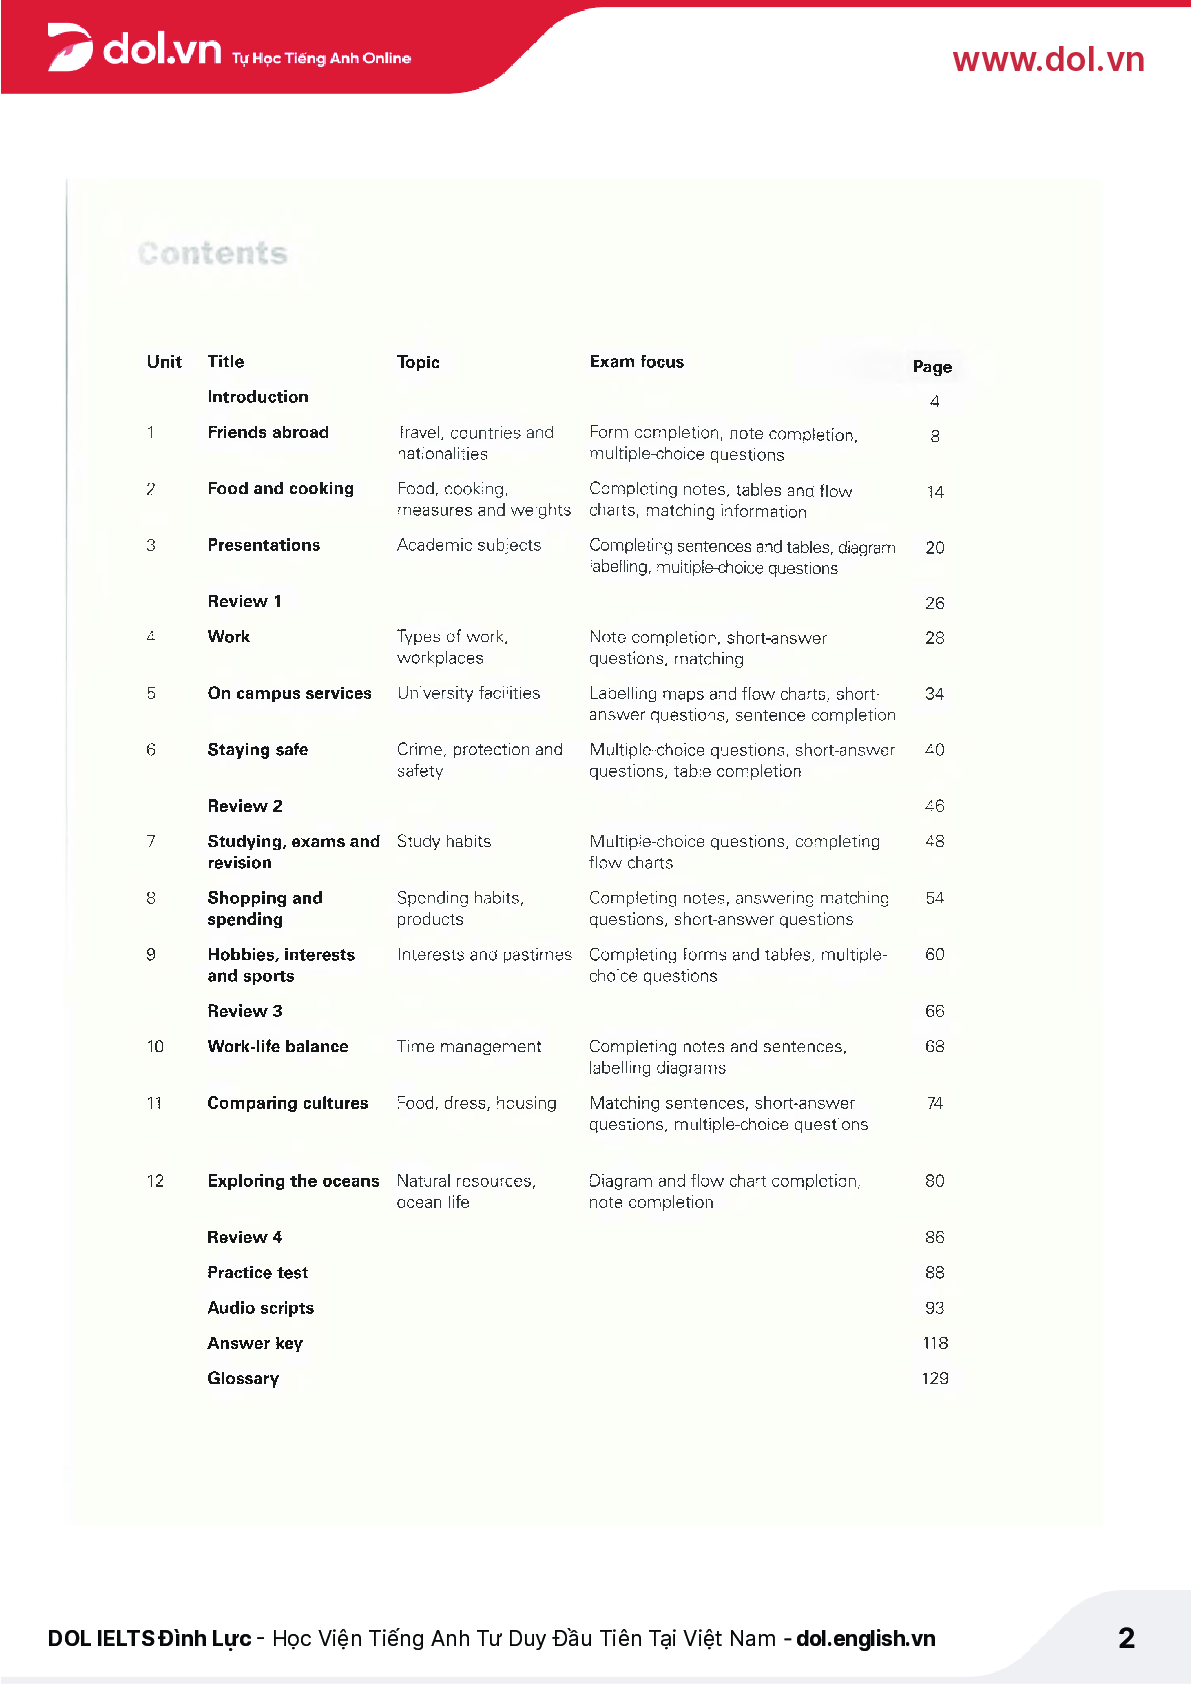 Sách Get Ready for IELTS Listening pdf | Xem online, tải PDF miễn phí (trang 2)